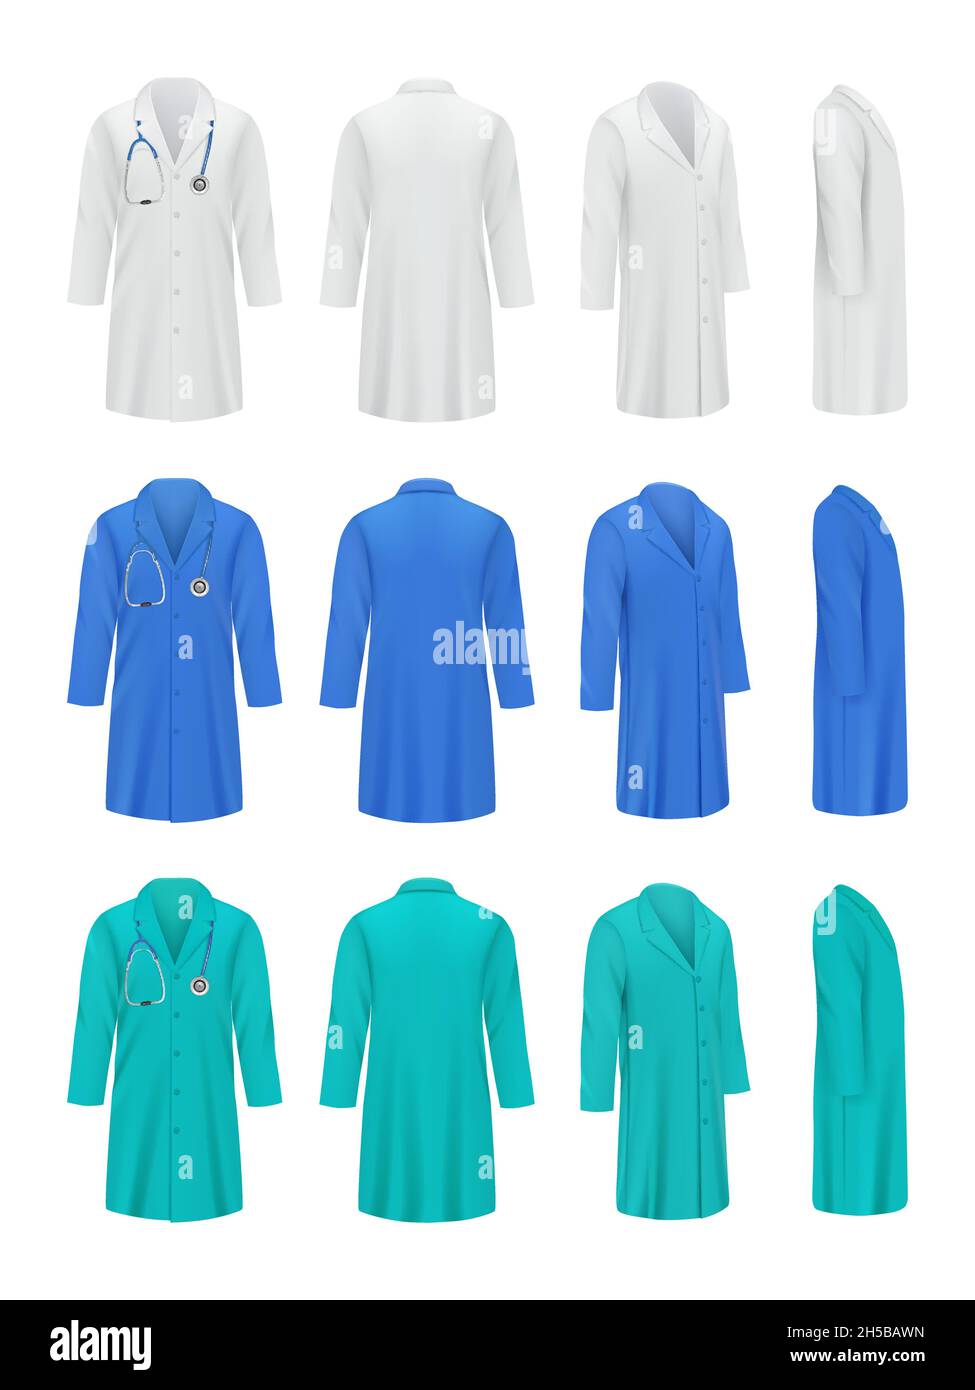 Farbige Arztkittel. Professionelle modische Uniform für medizinische Spezialisten Arbeitskleidung Jacke Krankenschwester anständige Vektor-Illustrationen Stock Vektor